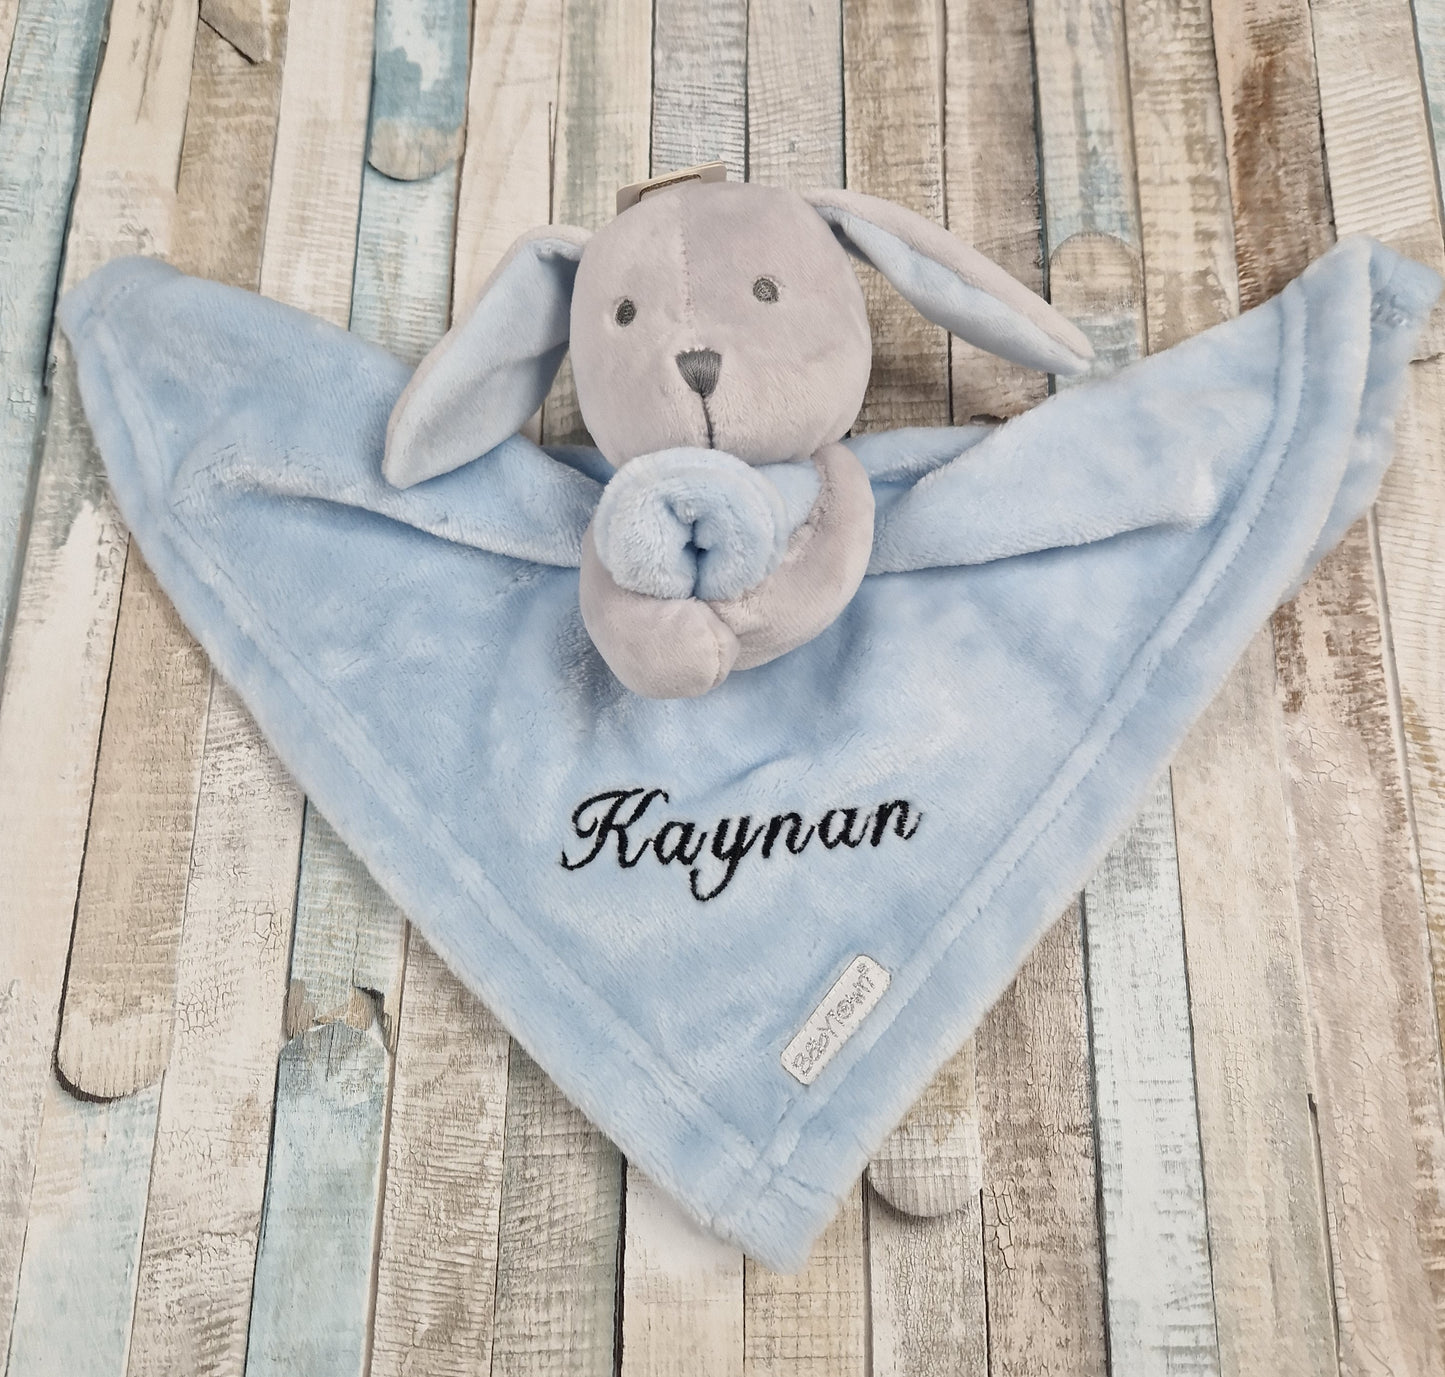 Personalised Baby Babytown Novelty Bunny Comforter